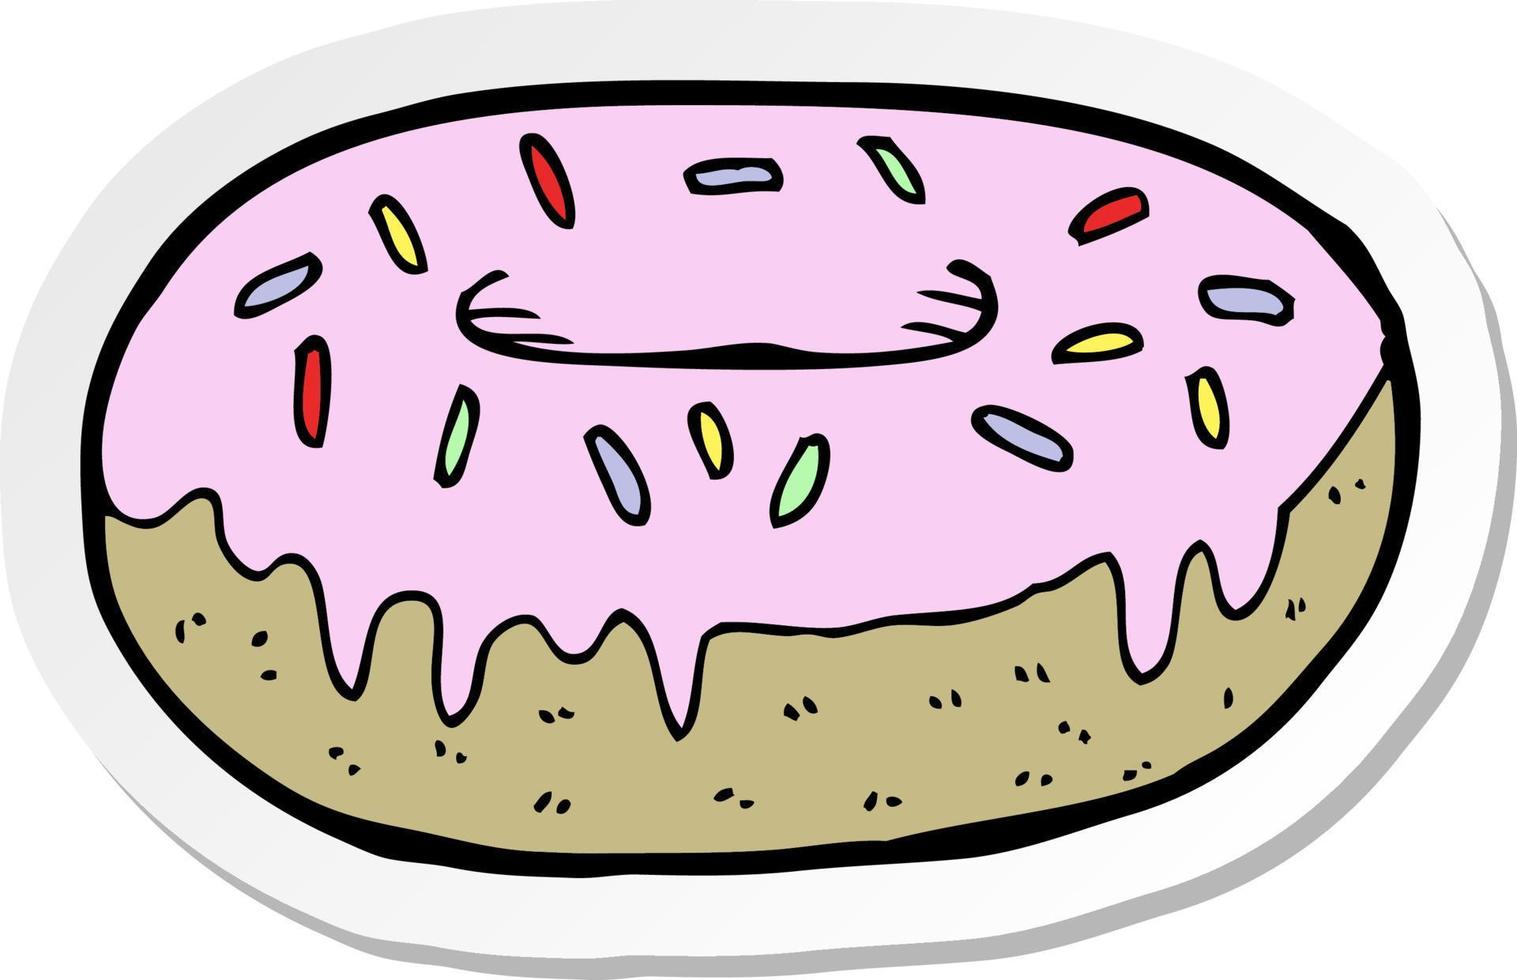 adesivo de um donut de desenho animado vetor